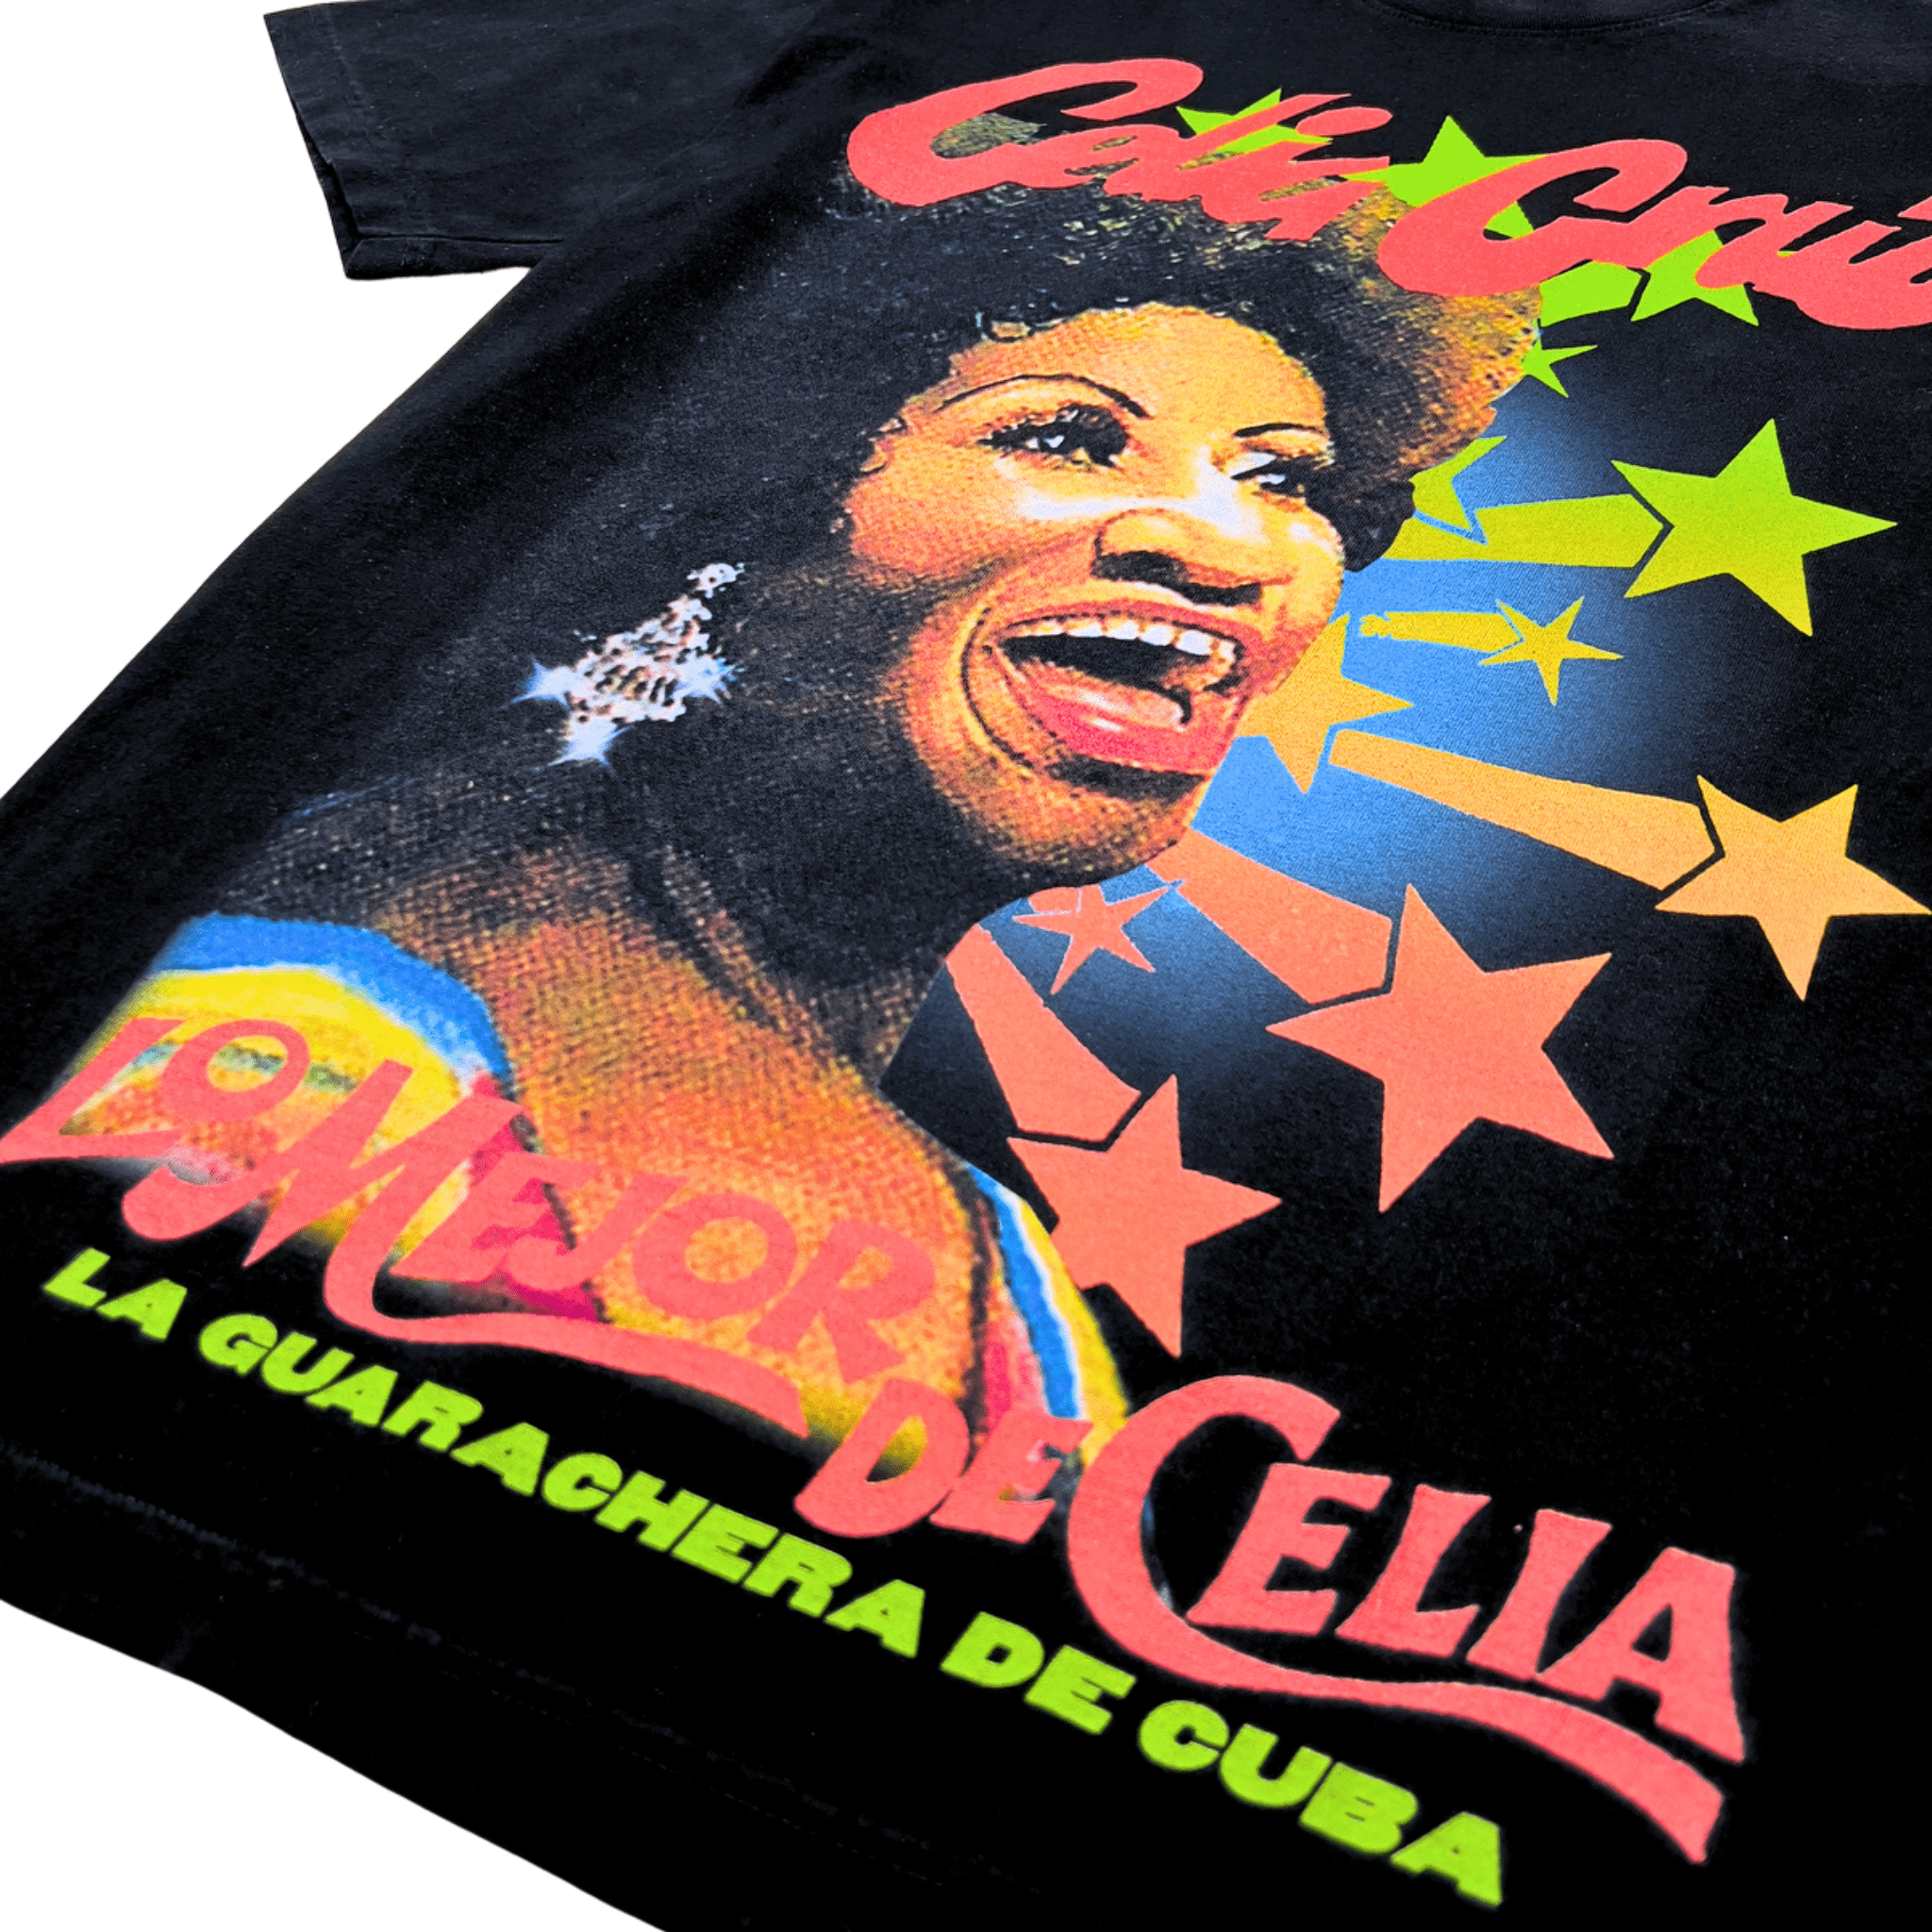 Celia Cruz Tee in black